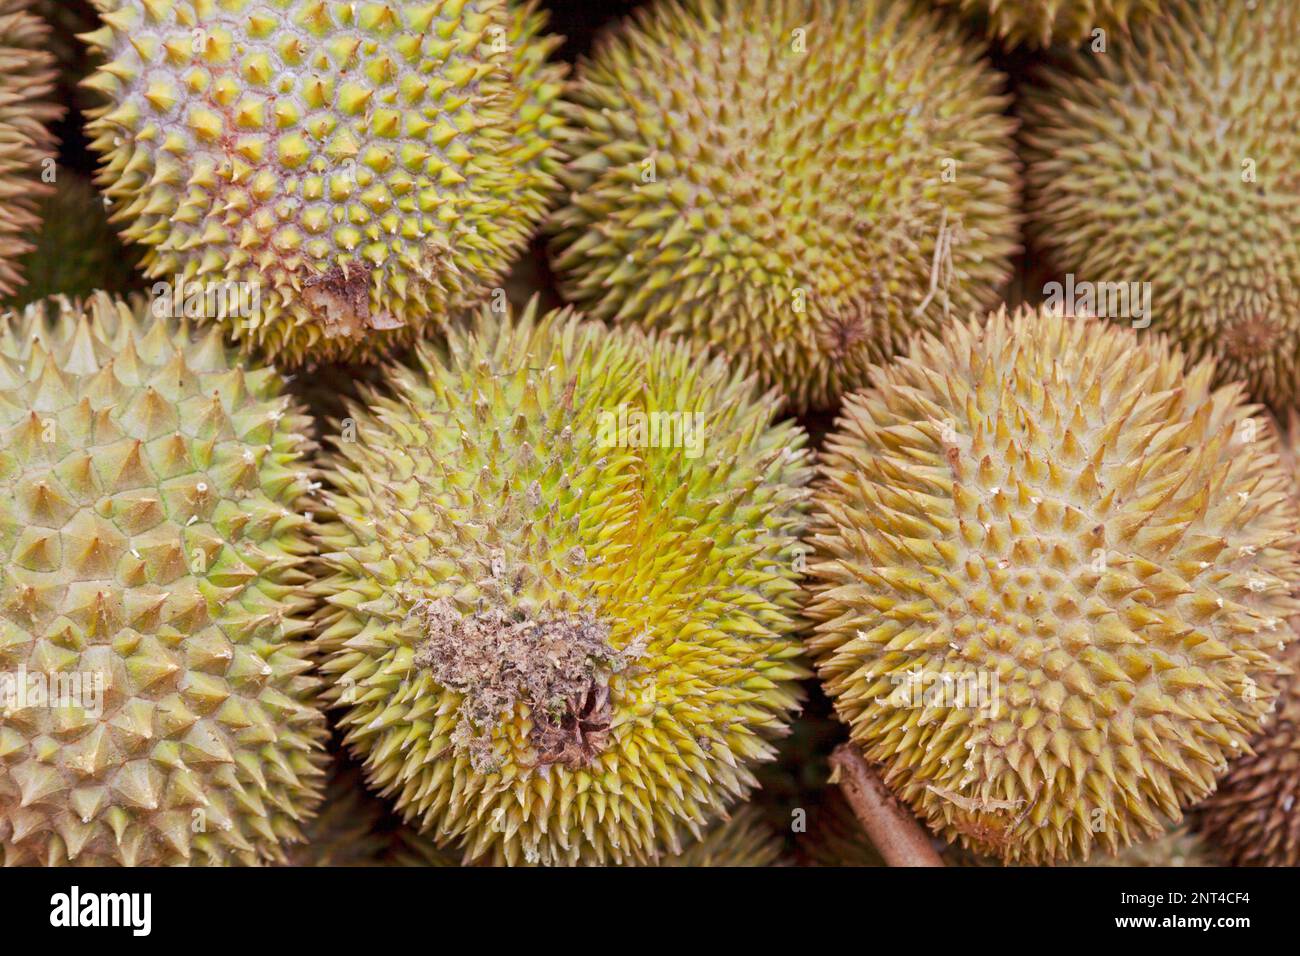 Nahaufnahme eines Haufens von Durianfruchten zum Verkauf an einem Marktstand. Stockfoto